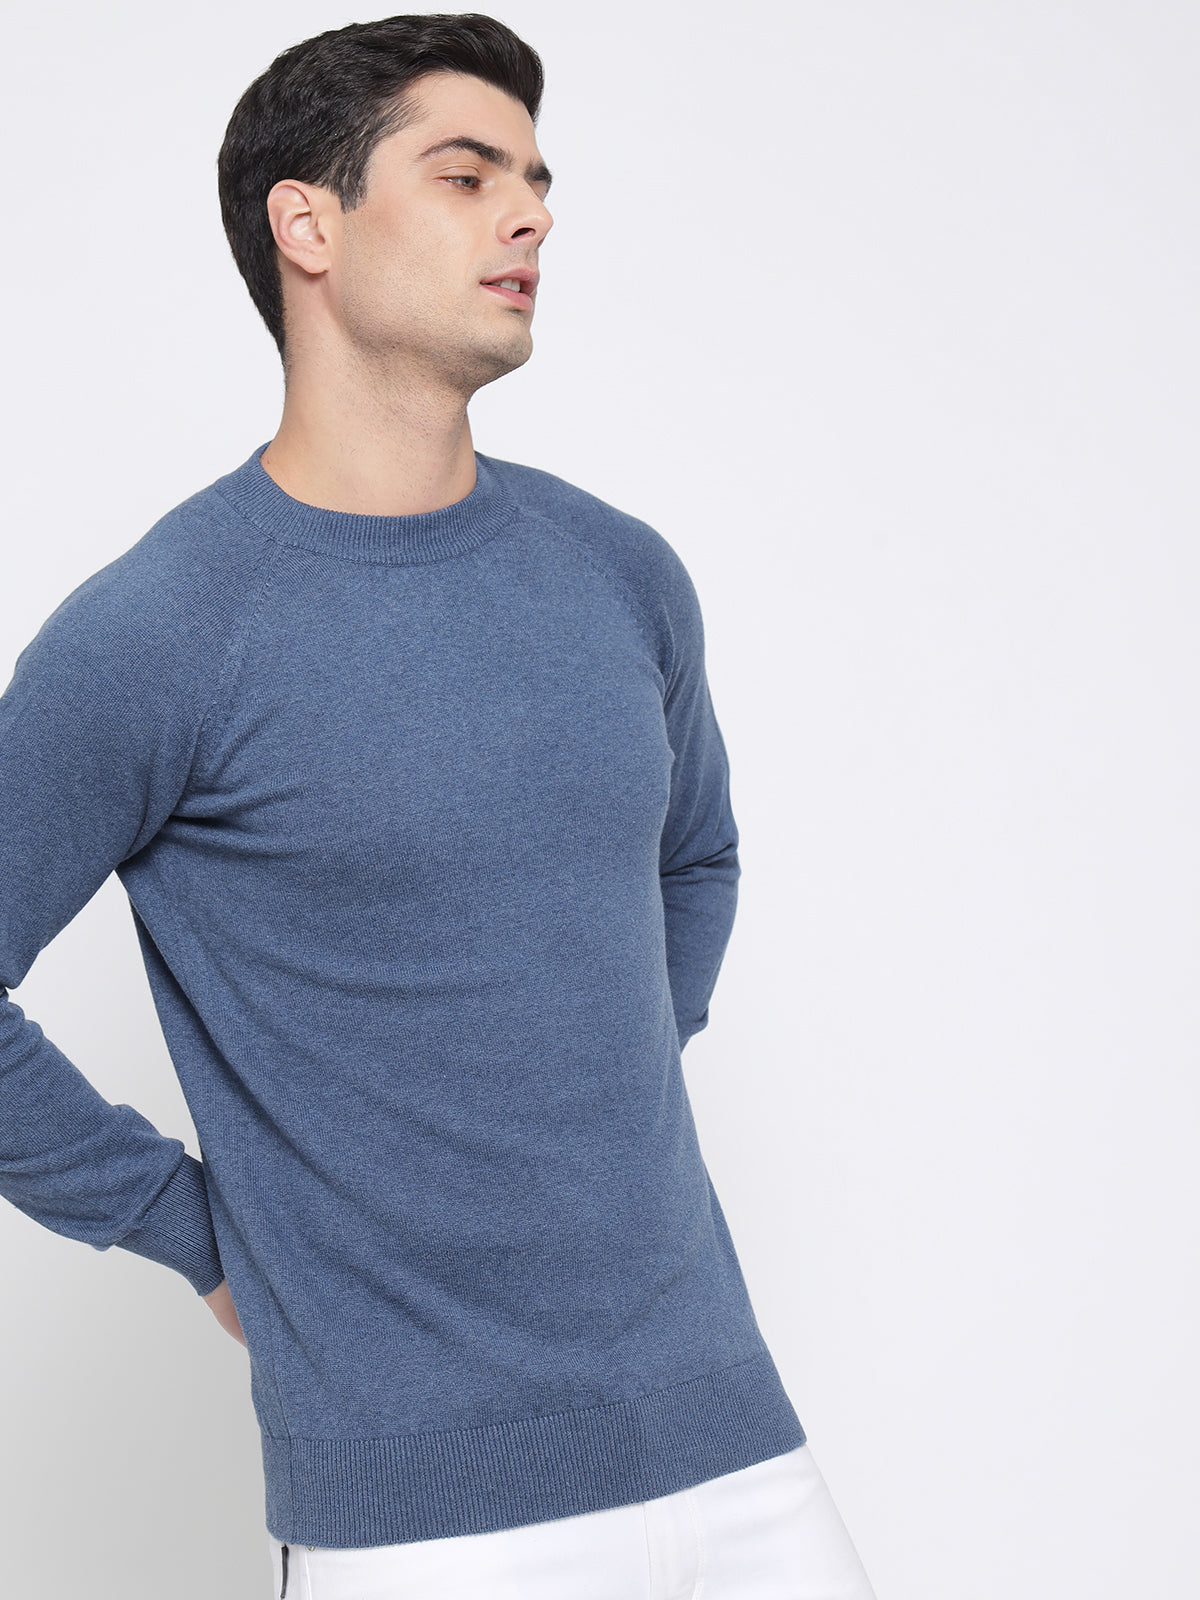 Steel Blue Basic Soft Sweater For Men